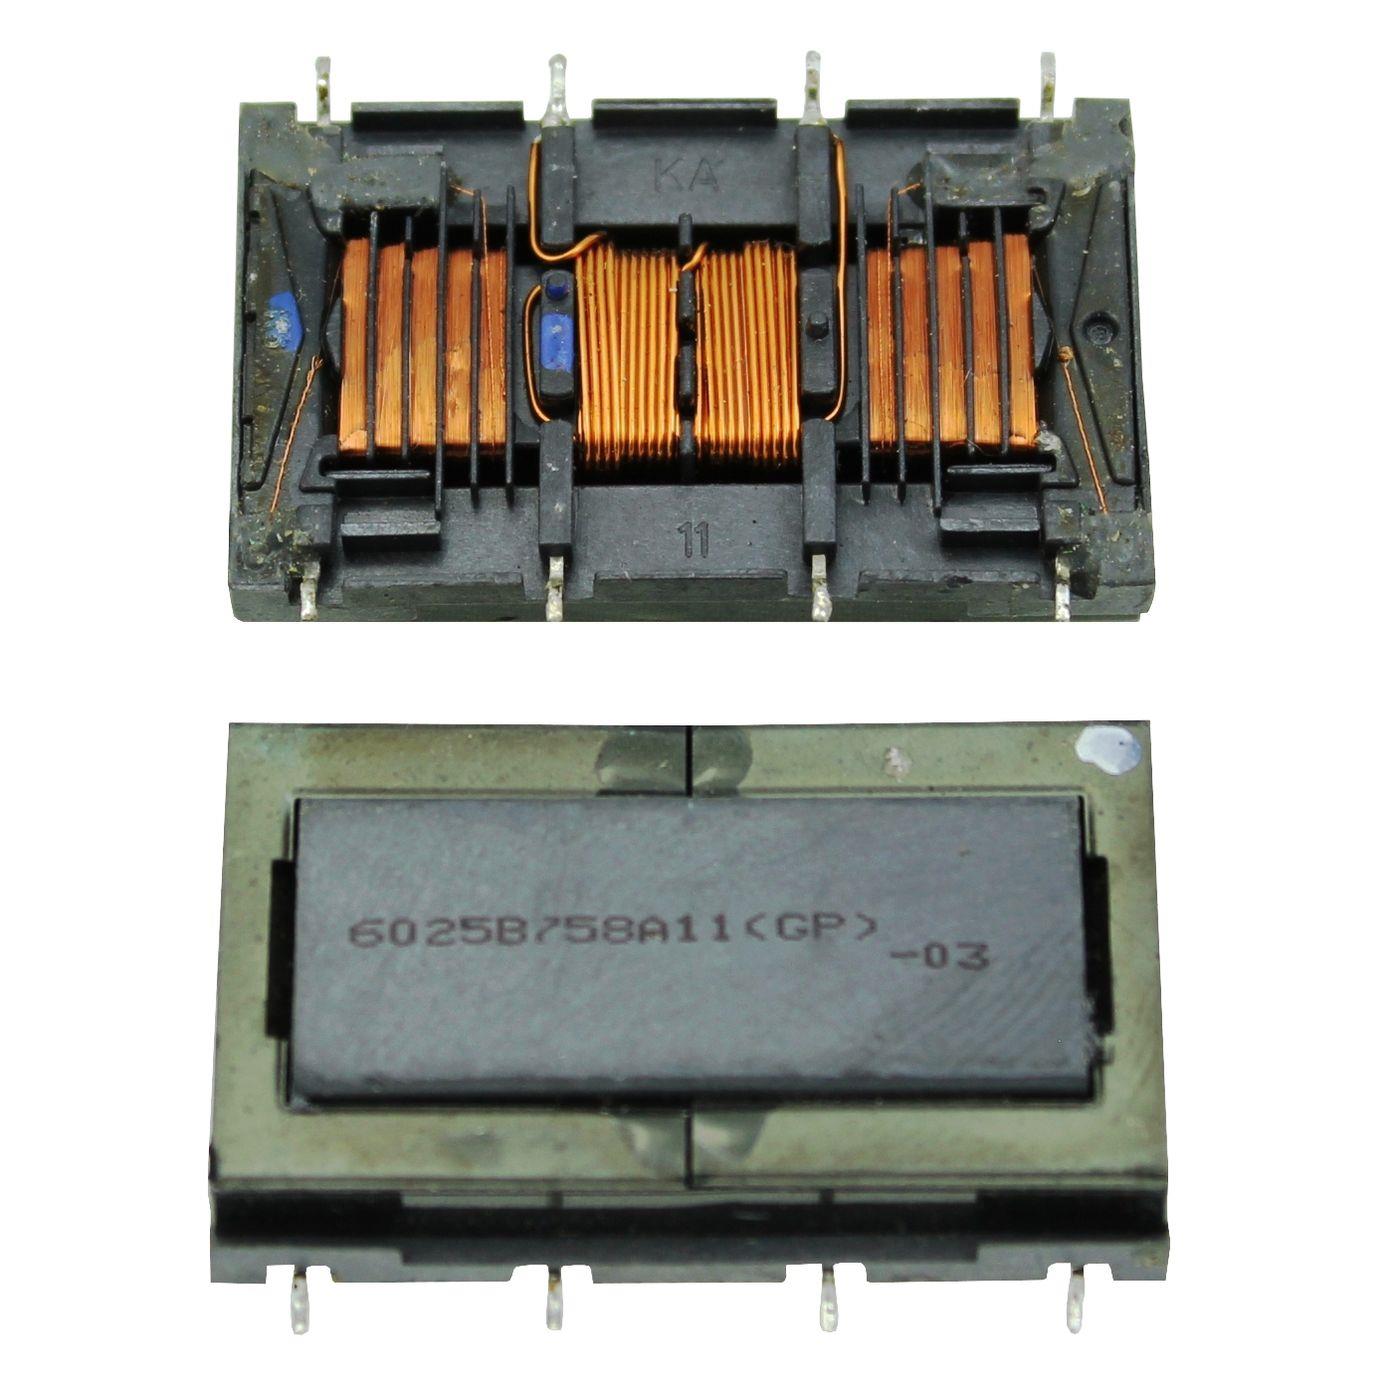 LCD Inverter Trafo Lumonic 6025B Inverterboard Trafo